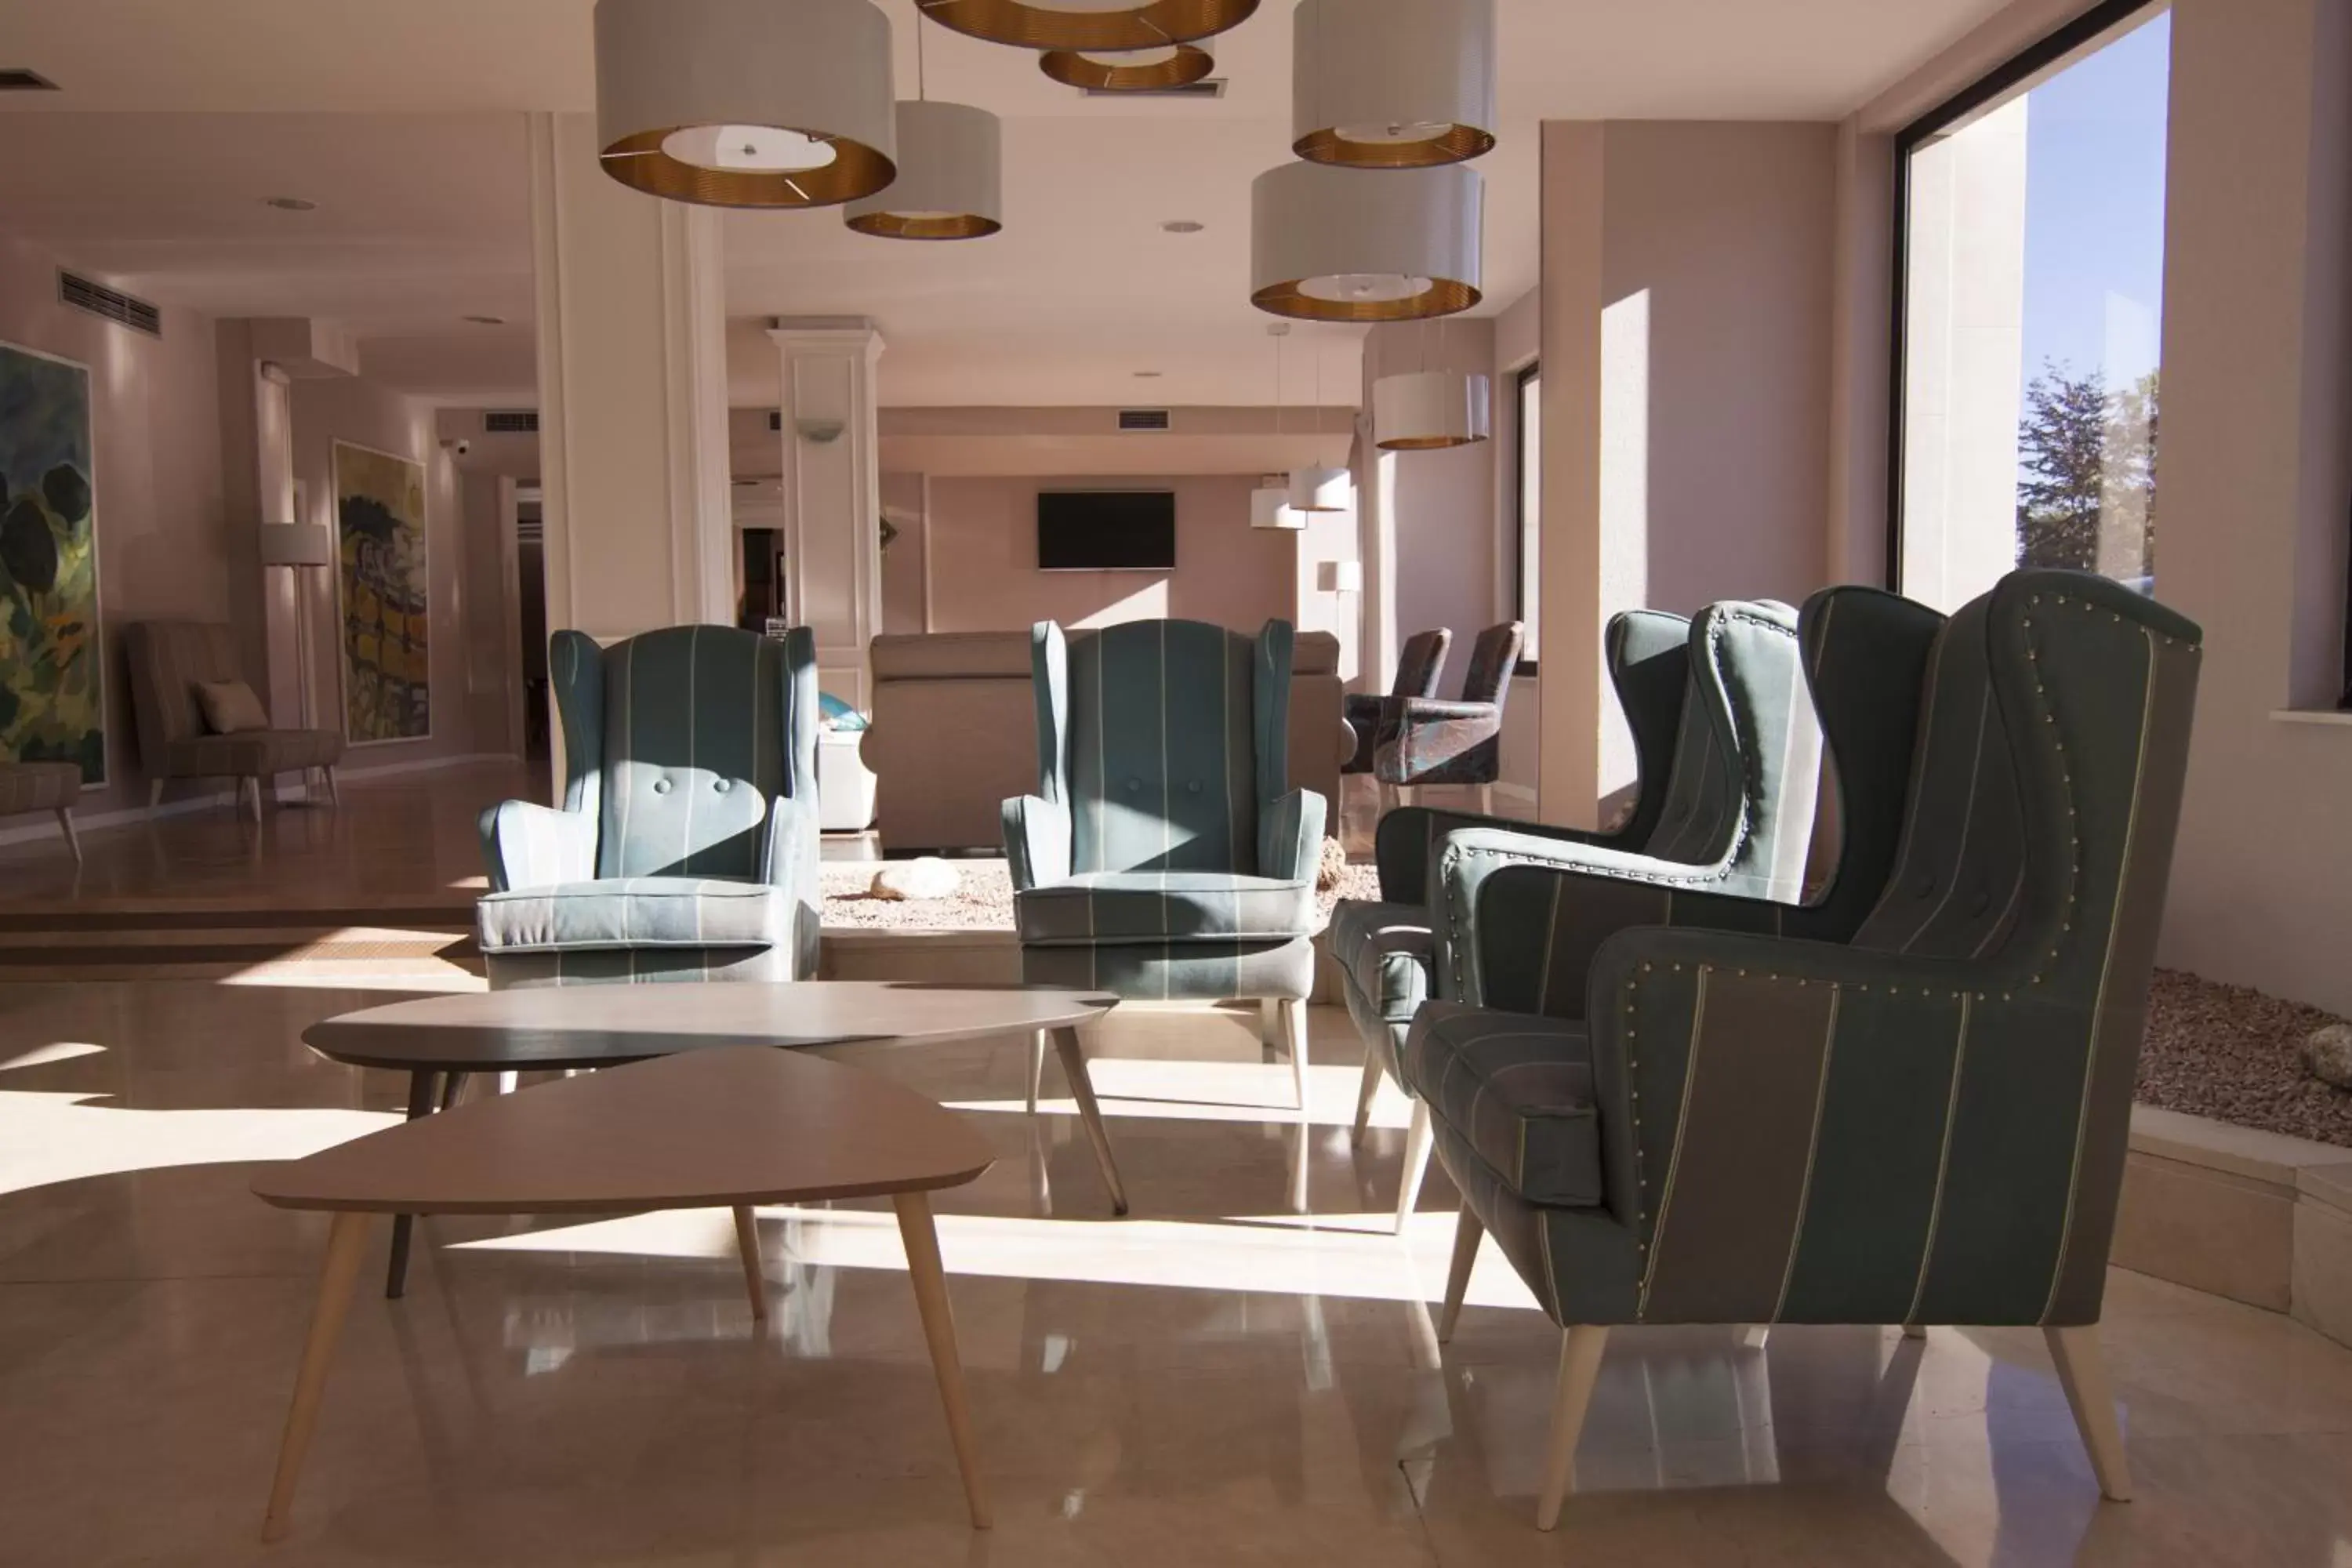 Lobby or reception in Hotel La Palma de Llanes